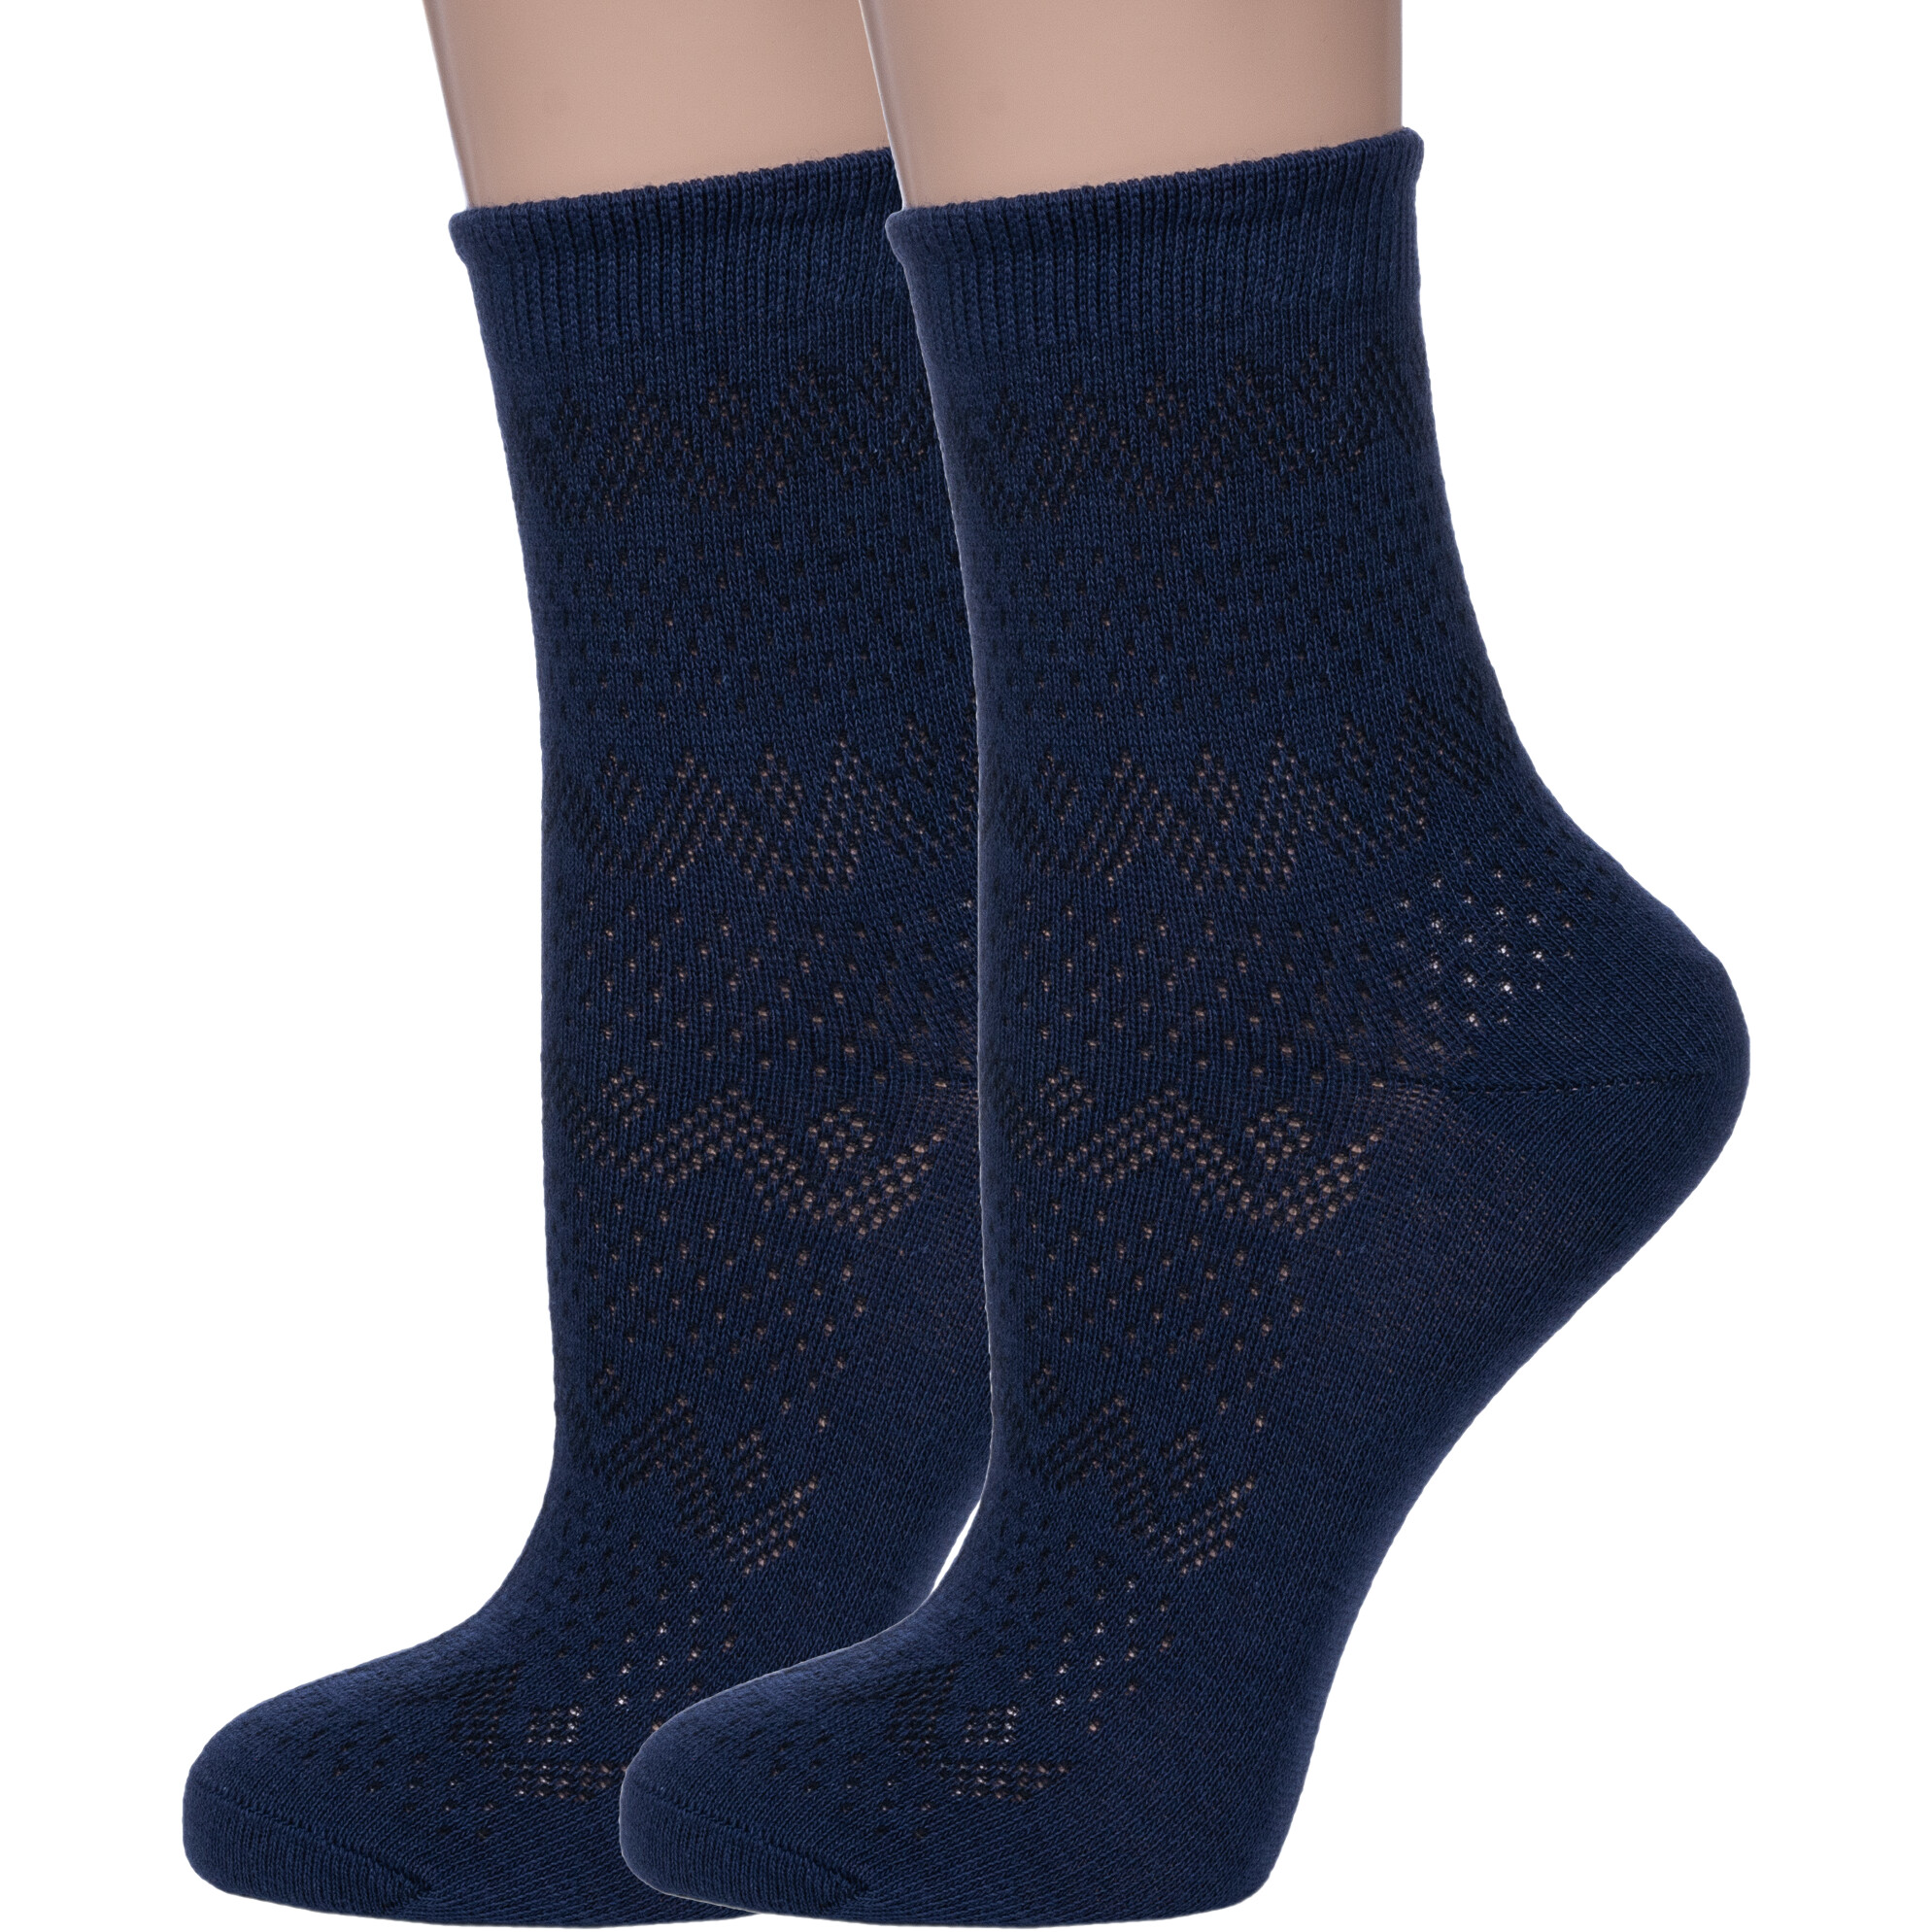 Комплект носков женских Смоленская Чулочная Фабрика 2-С196 синих 25, 2 пары